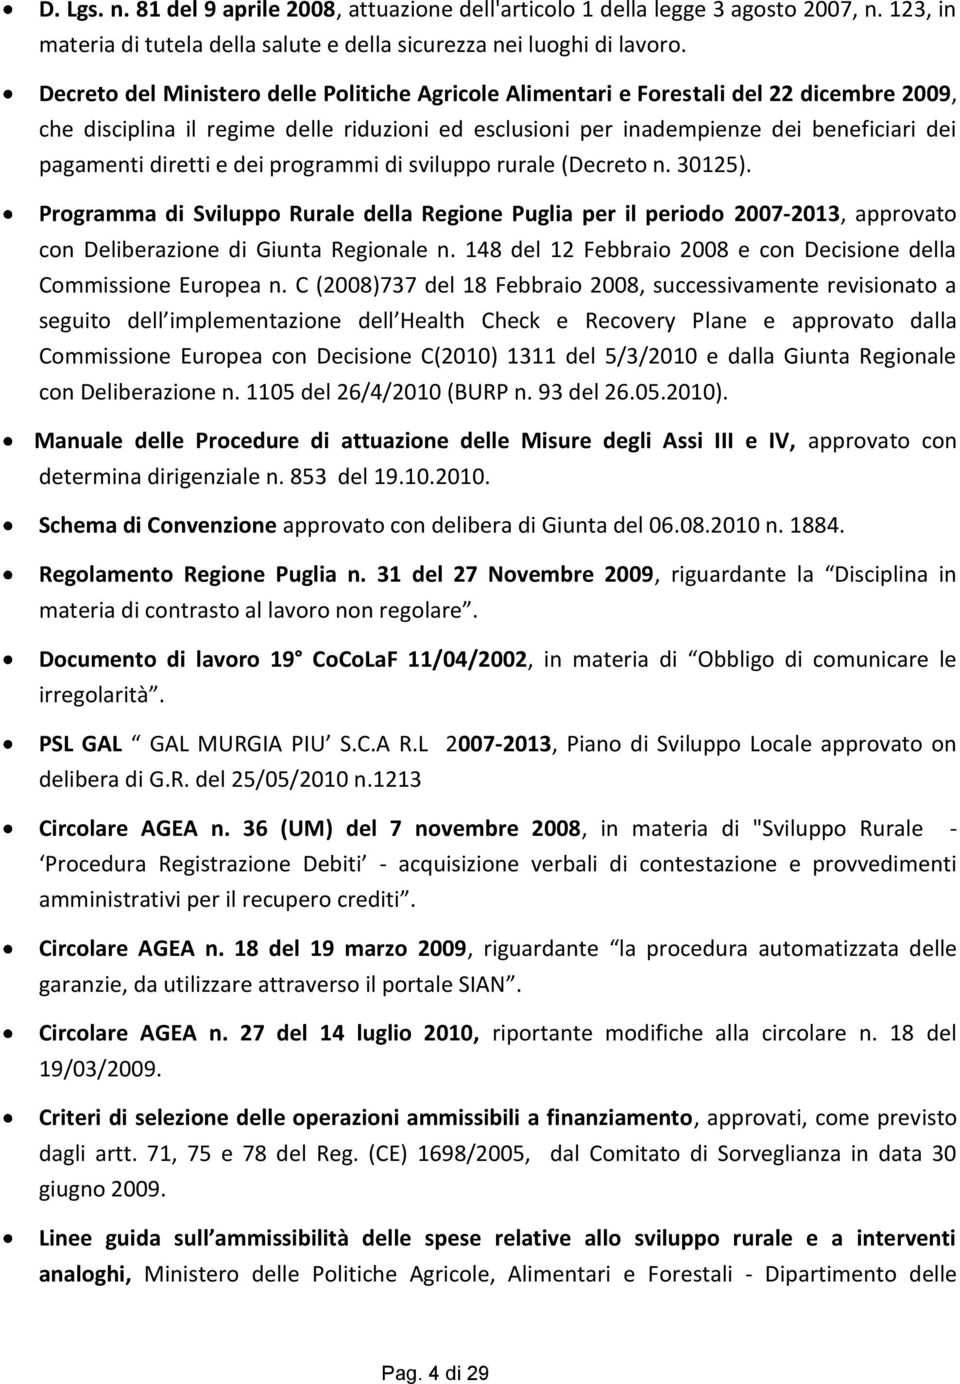 diretti e dei programmi di sviluppo rurale (Decreto n. 30125). Programma di Sviluppo Rurale della Regione Puglia per il periodo 2007-2013, approvato con Deliberazione di Giunta Regionale n.